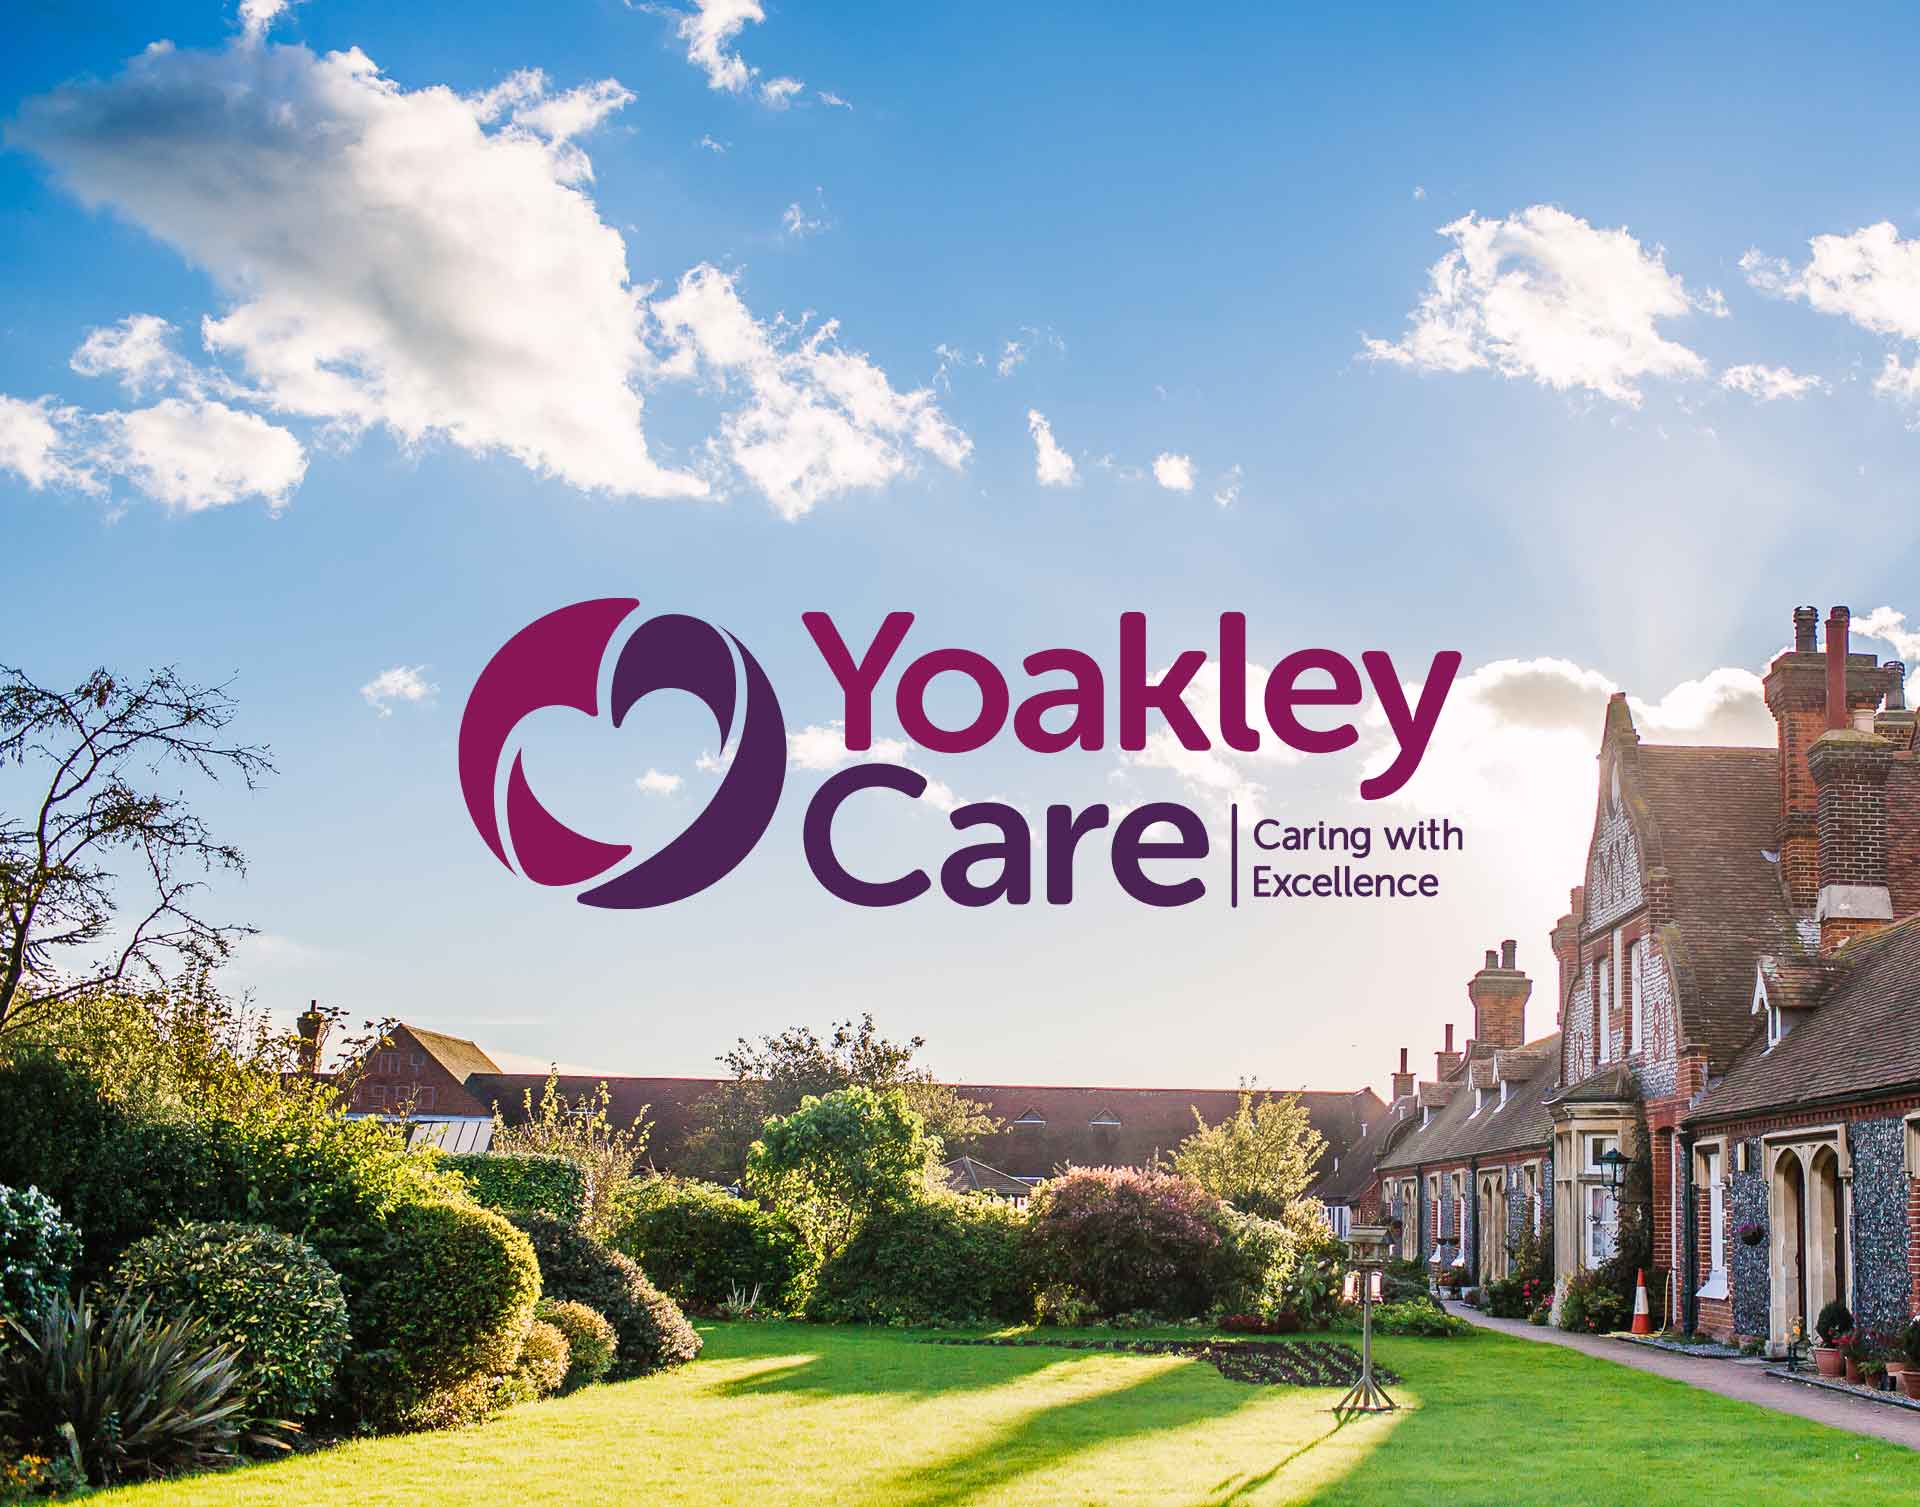 Yoakley Care